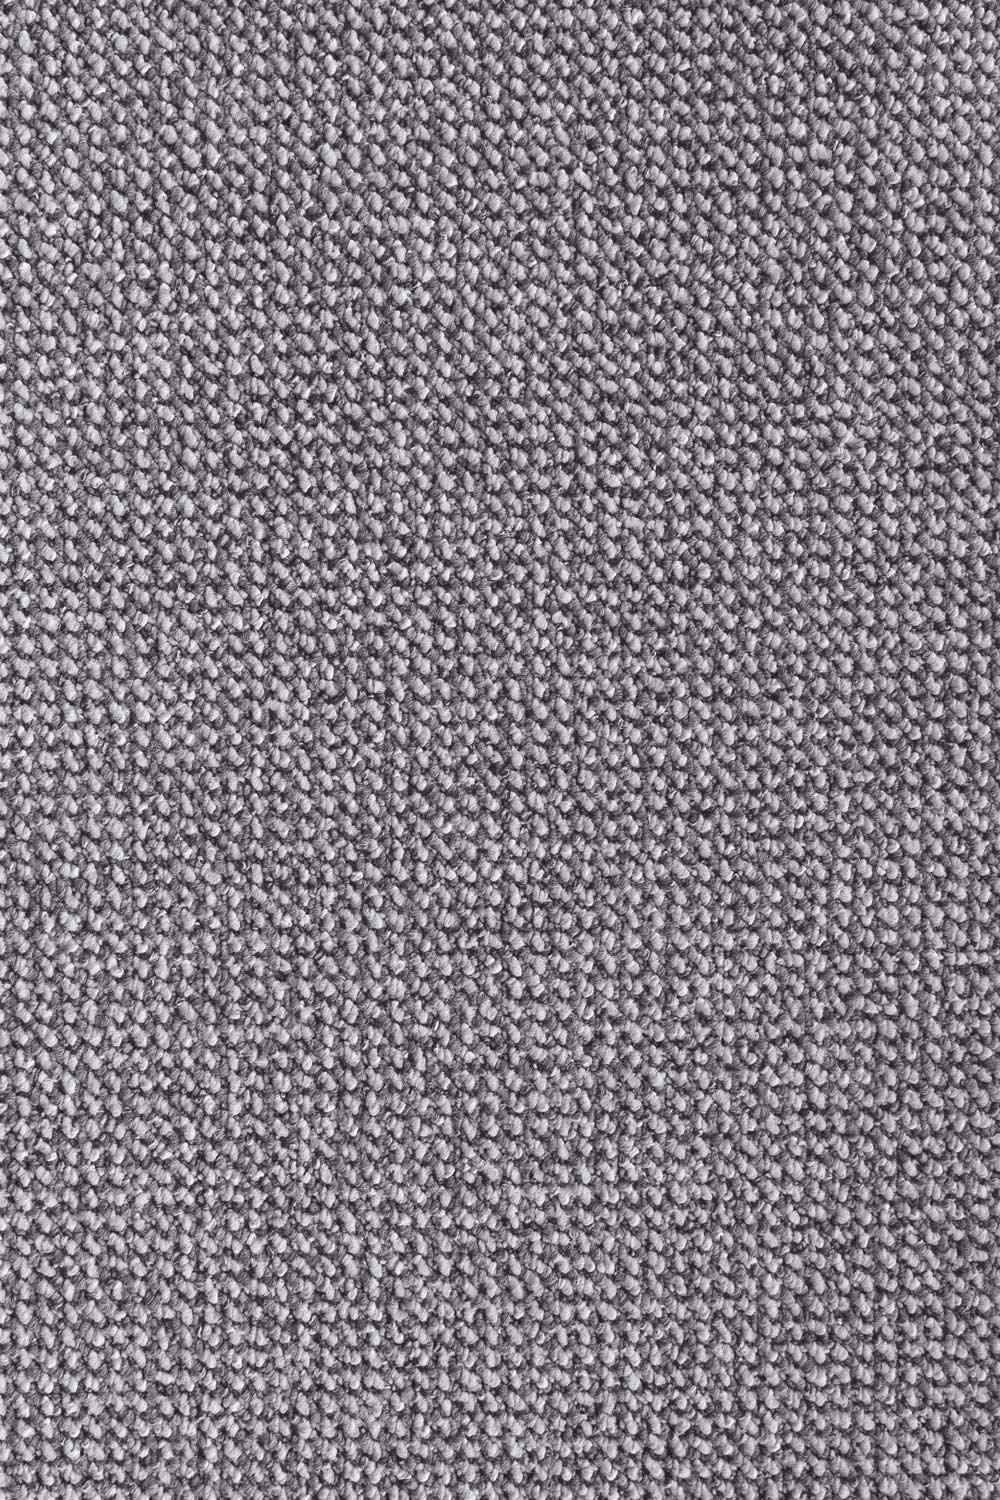 Metrážny koberec TILBURG/TITAN 1422 300 cm